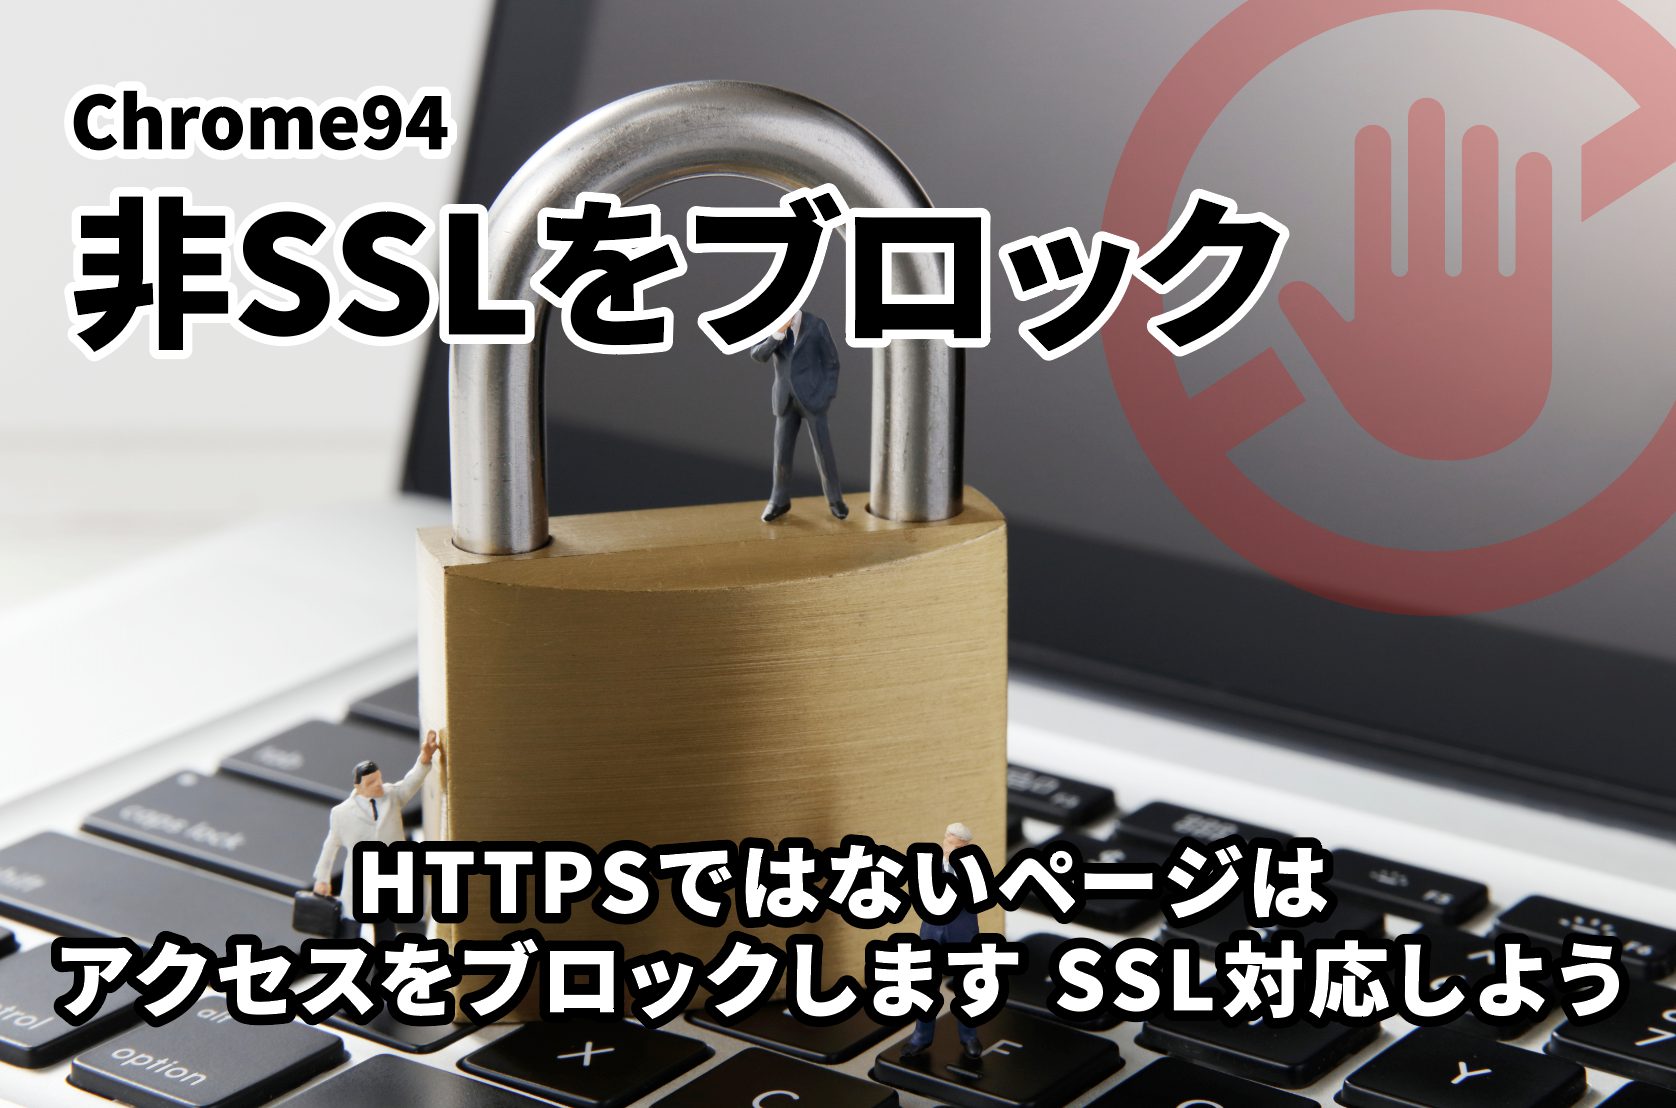 【Chrome94 非SSLをブロック】HTTPSではないページはアクセスをブロックします SSL対応しよう